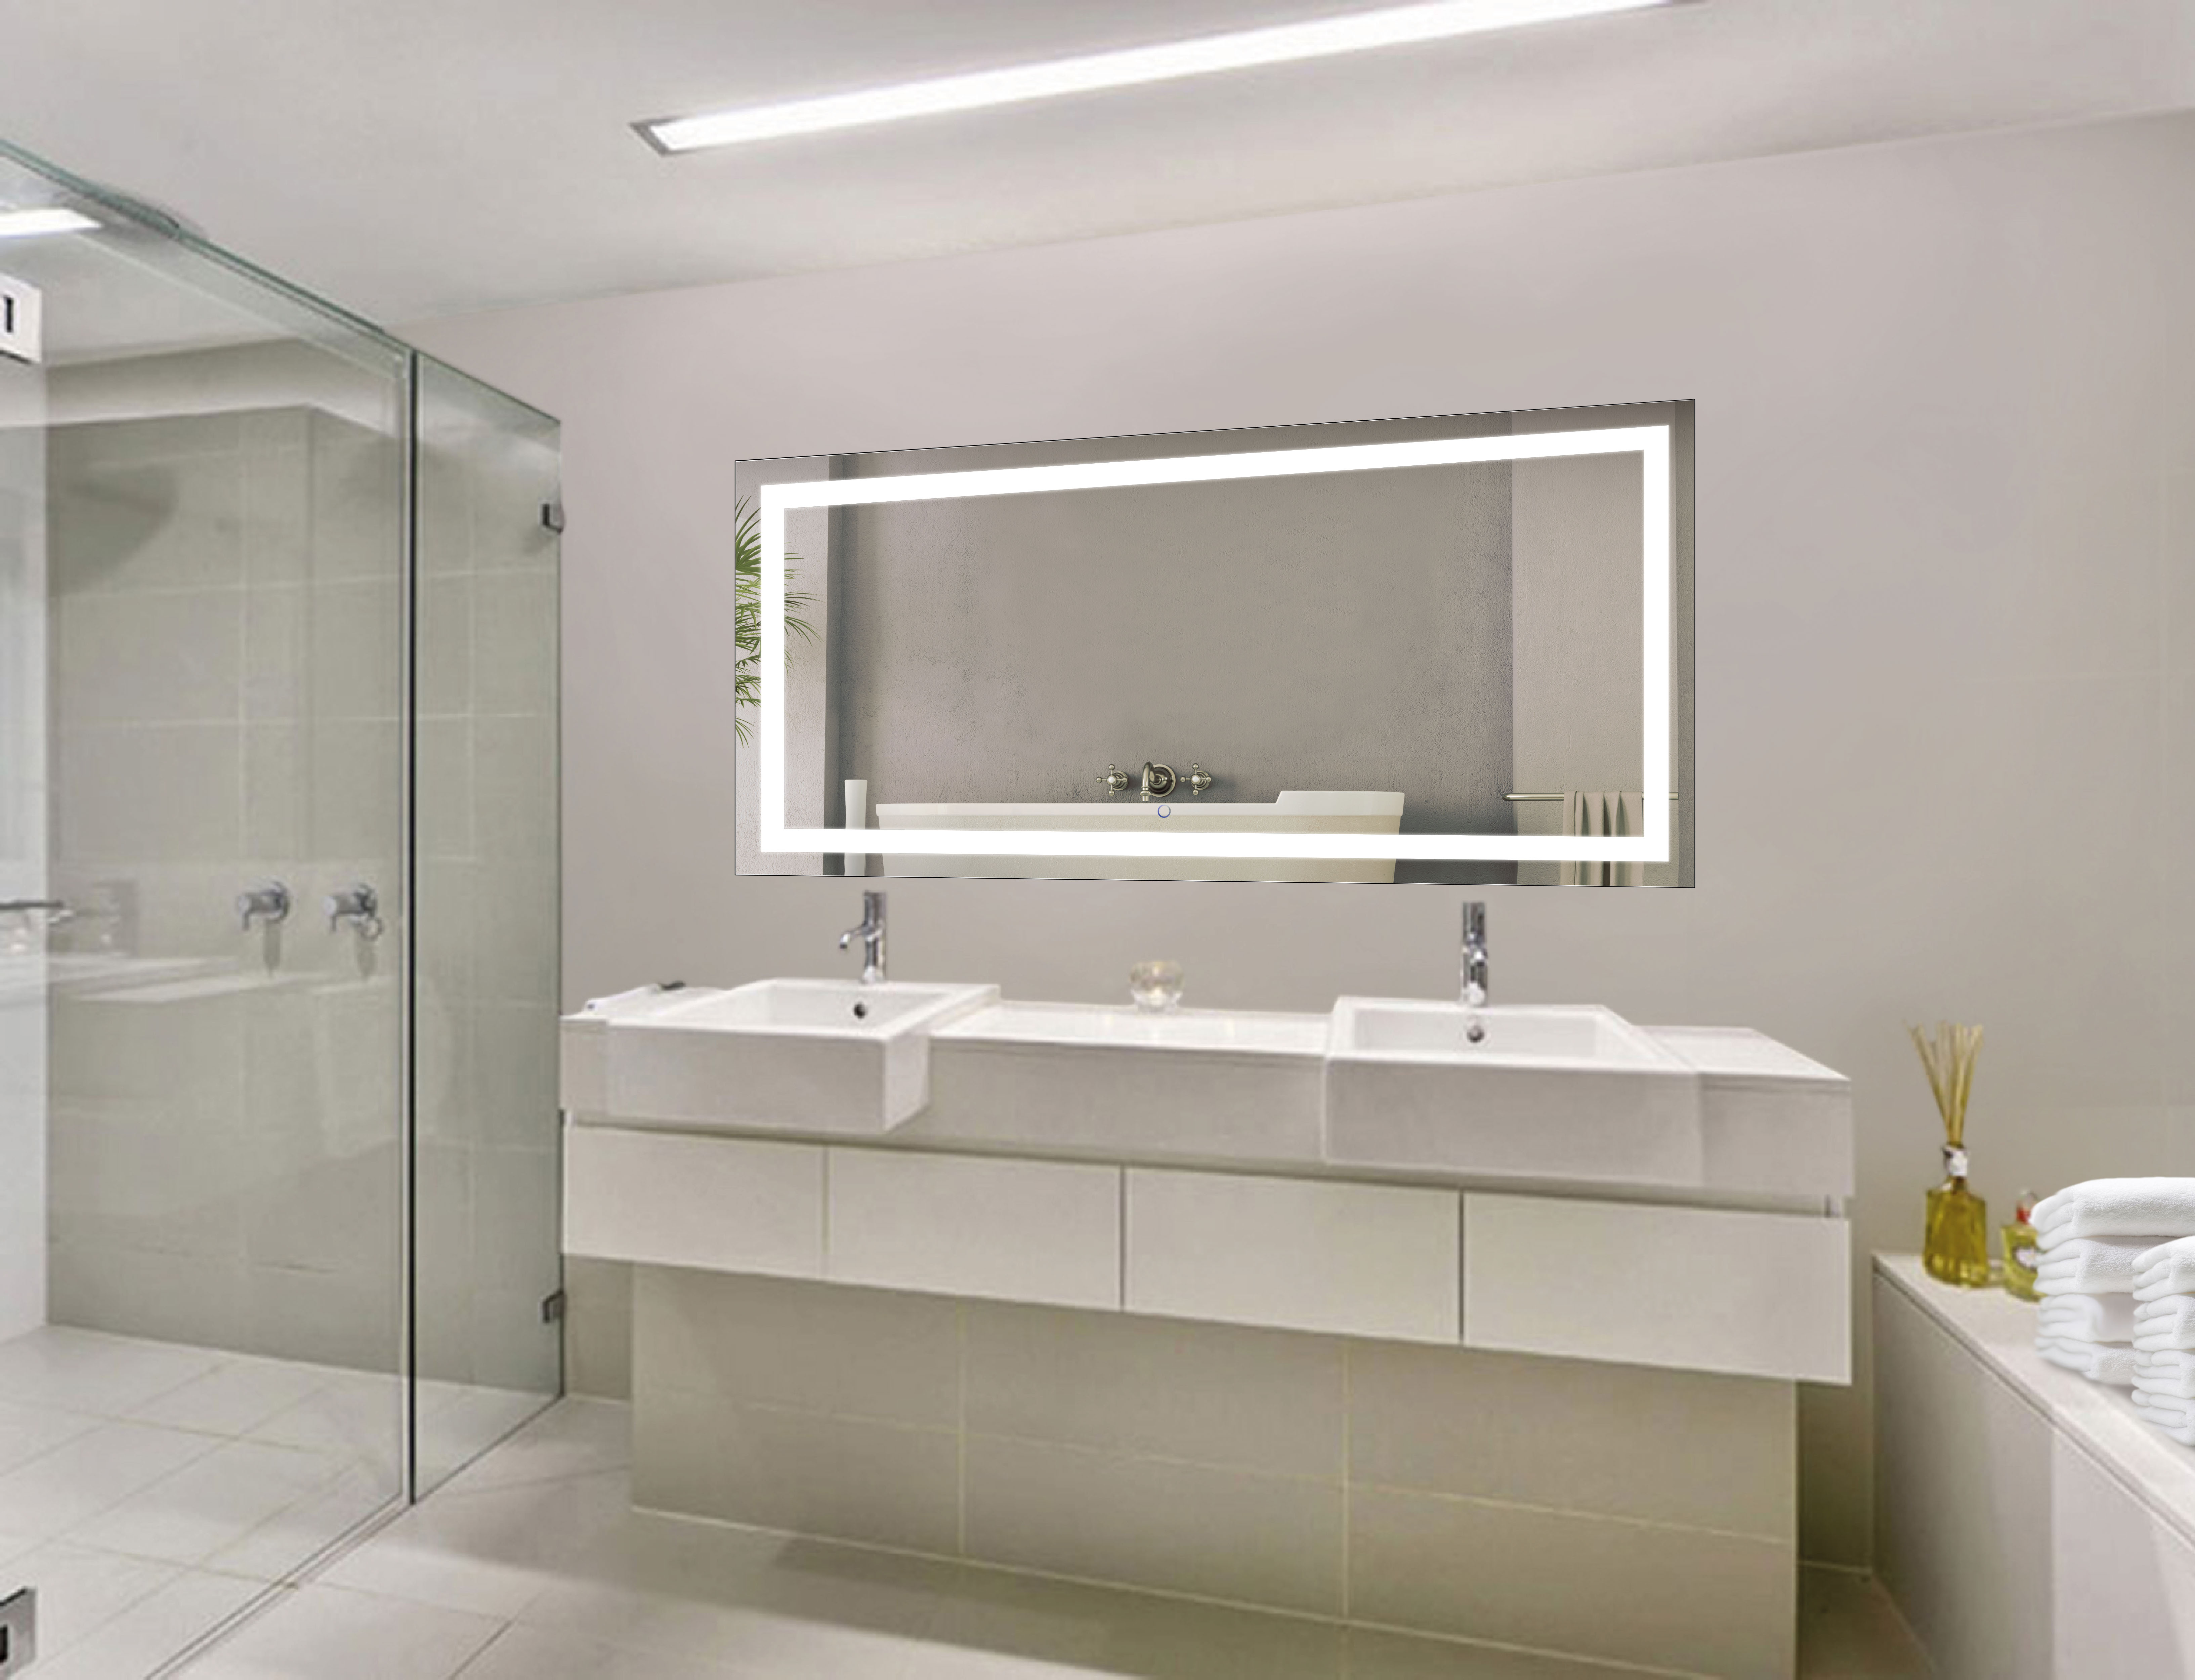 Illuminated Bathroom Vanity Mirror